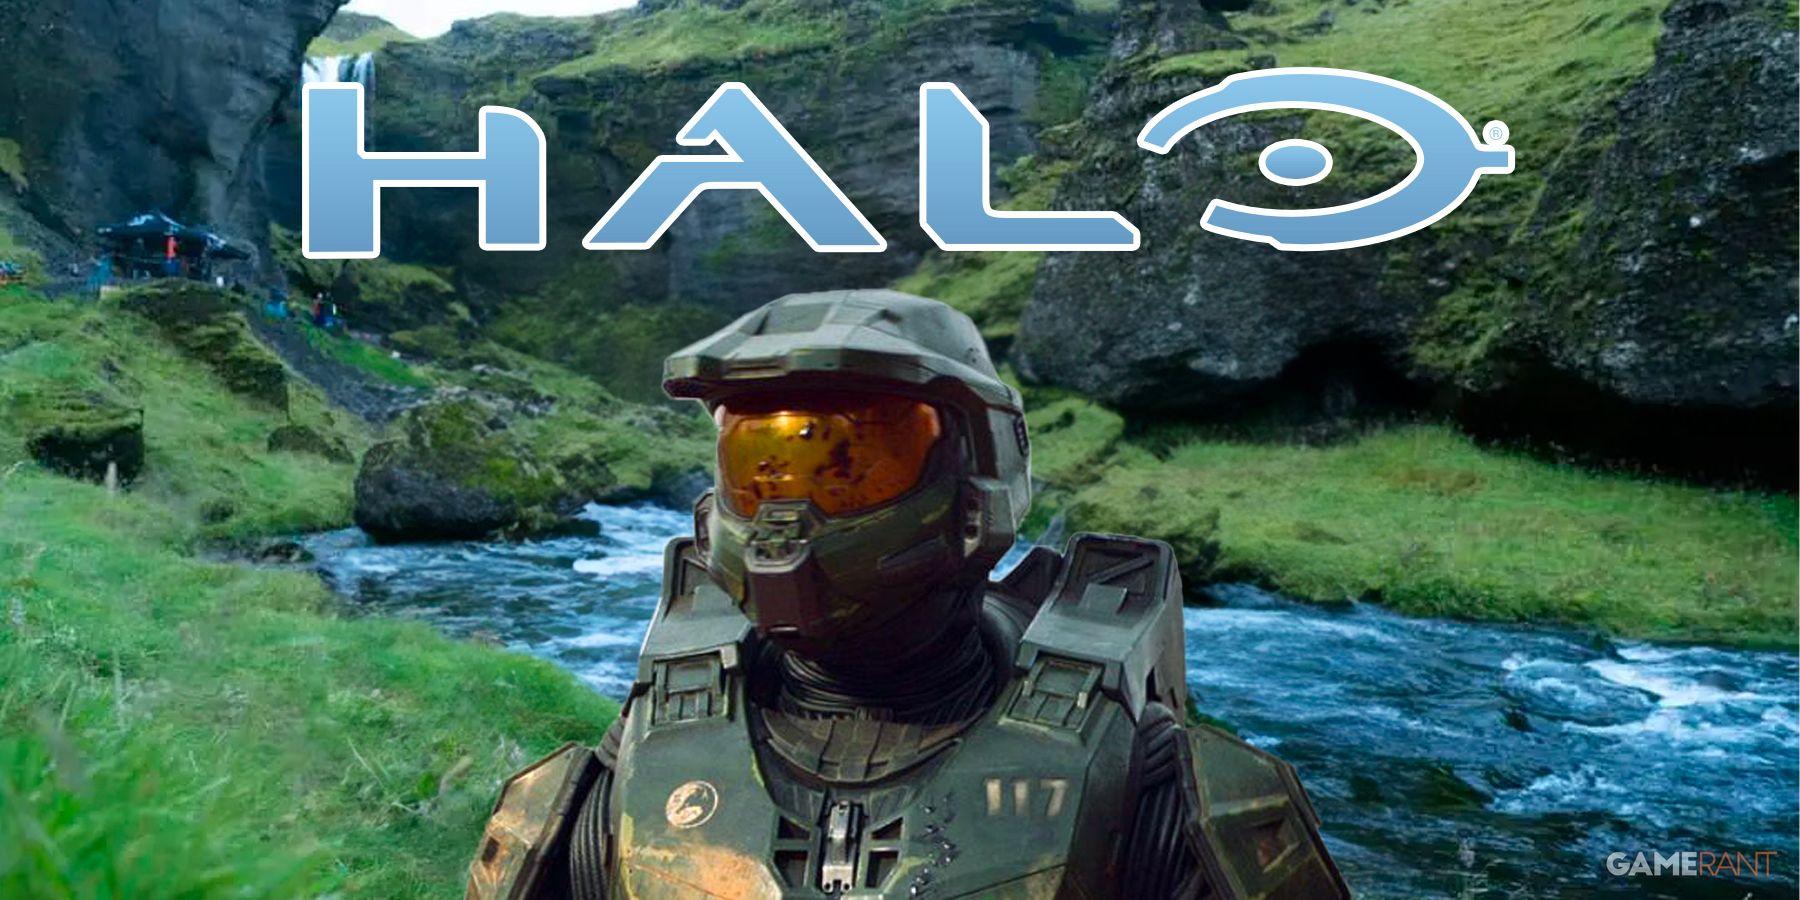 When Will Halo Season 2 Stream On Paramount?